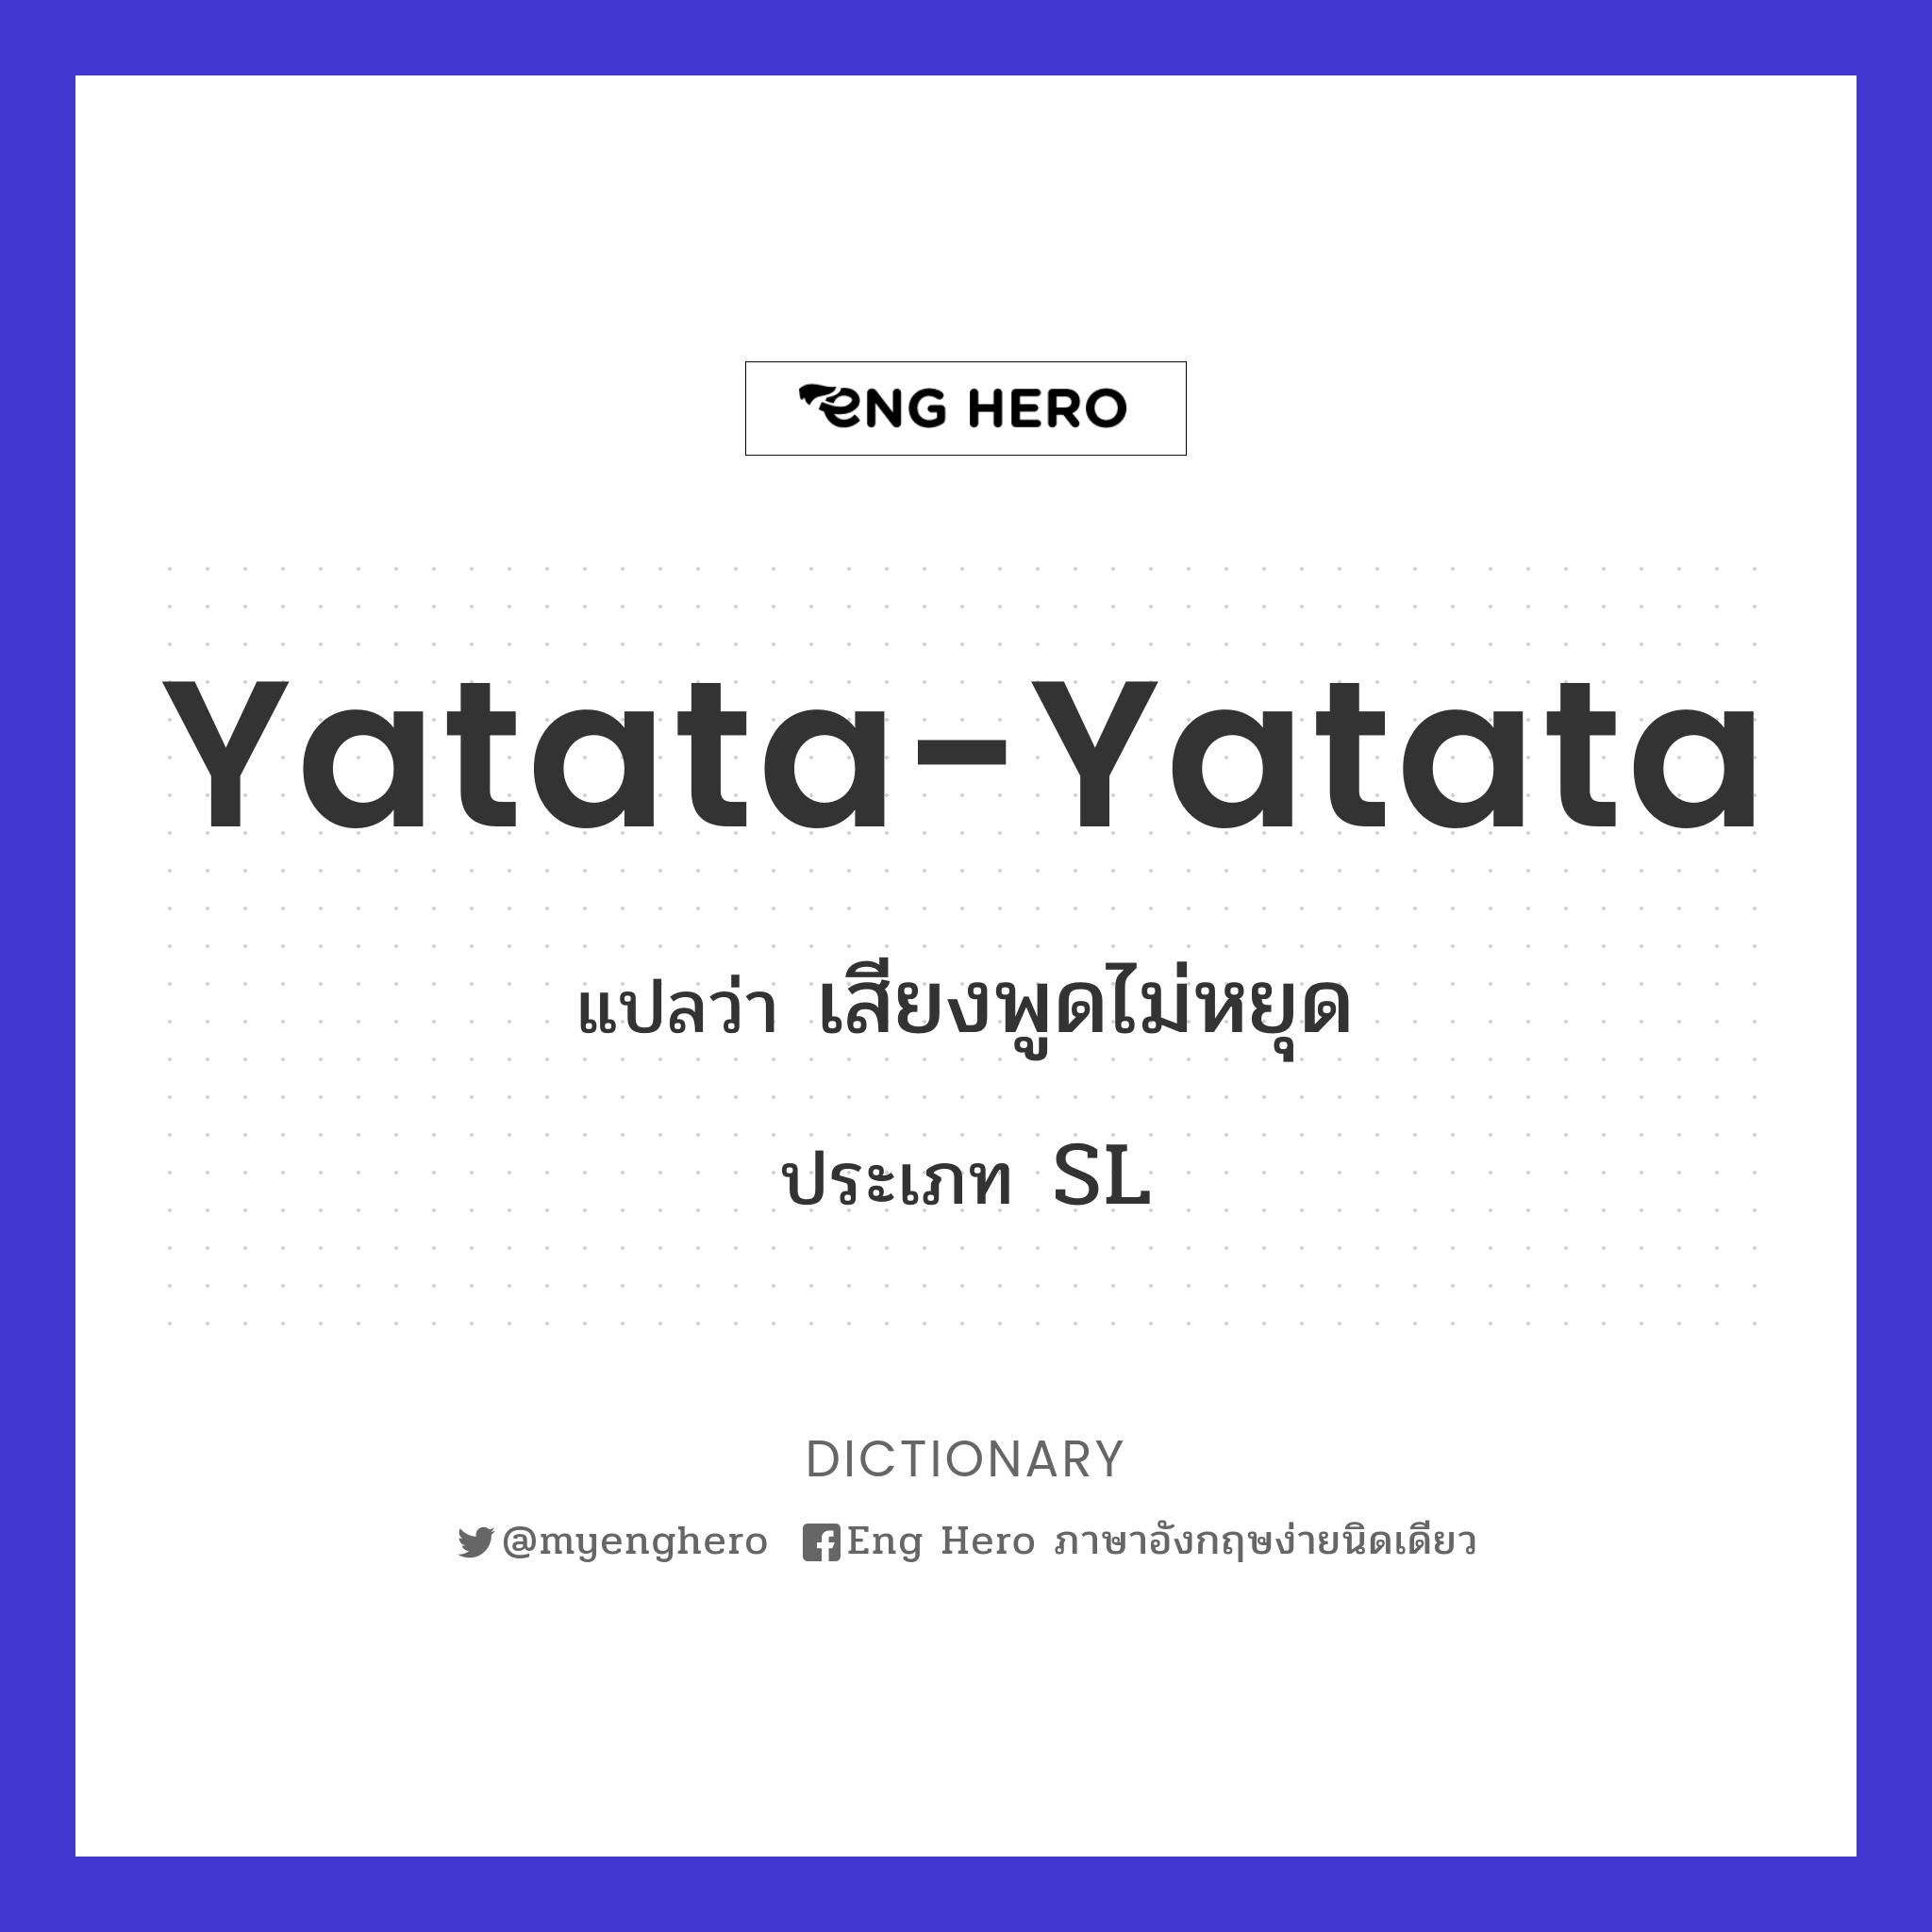 yatata-yatata